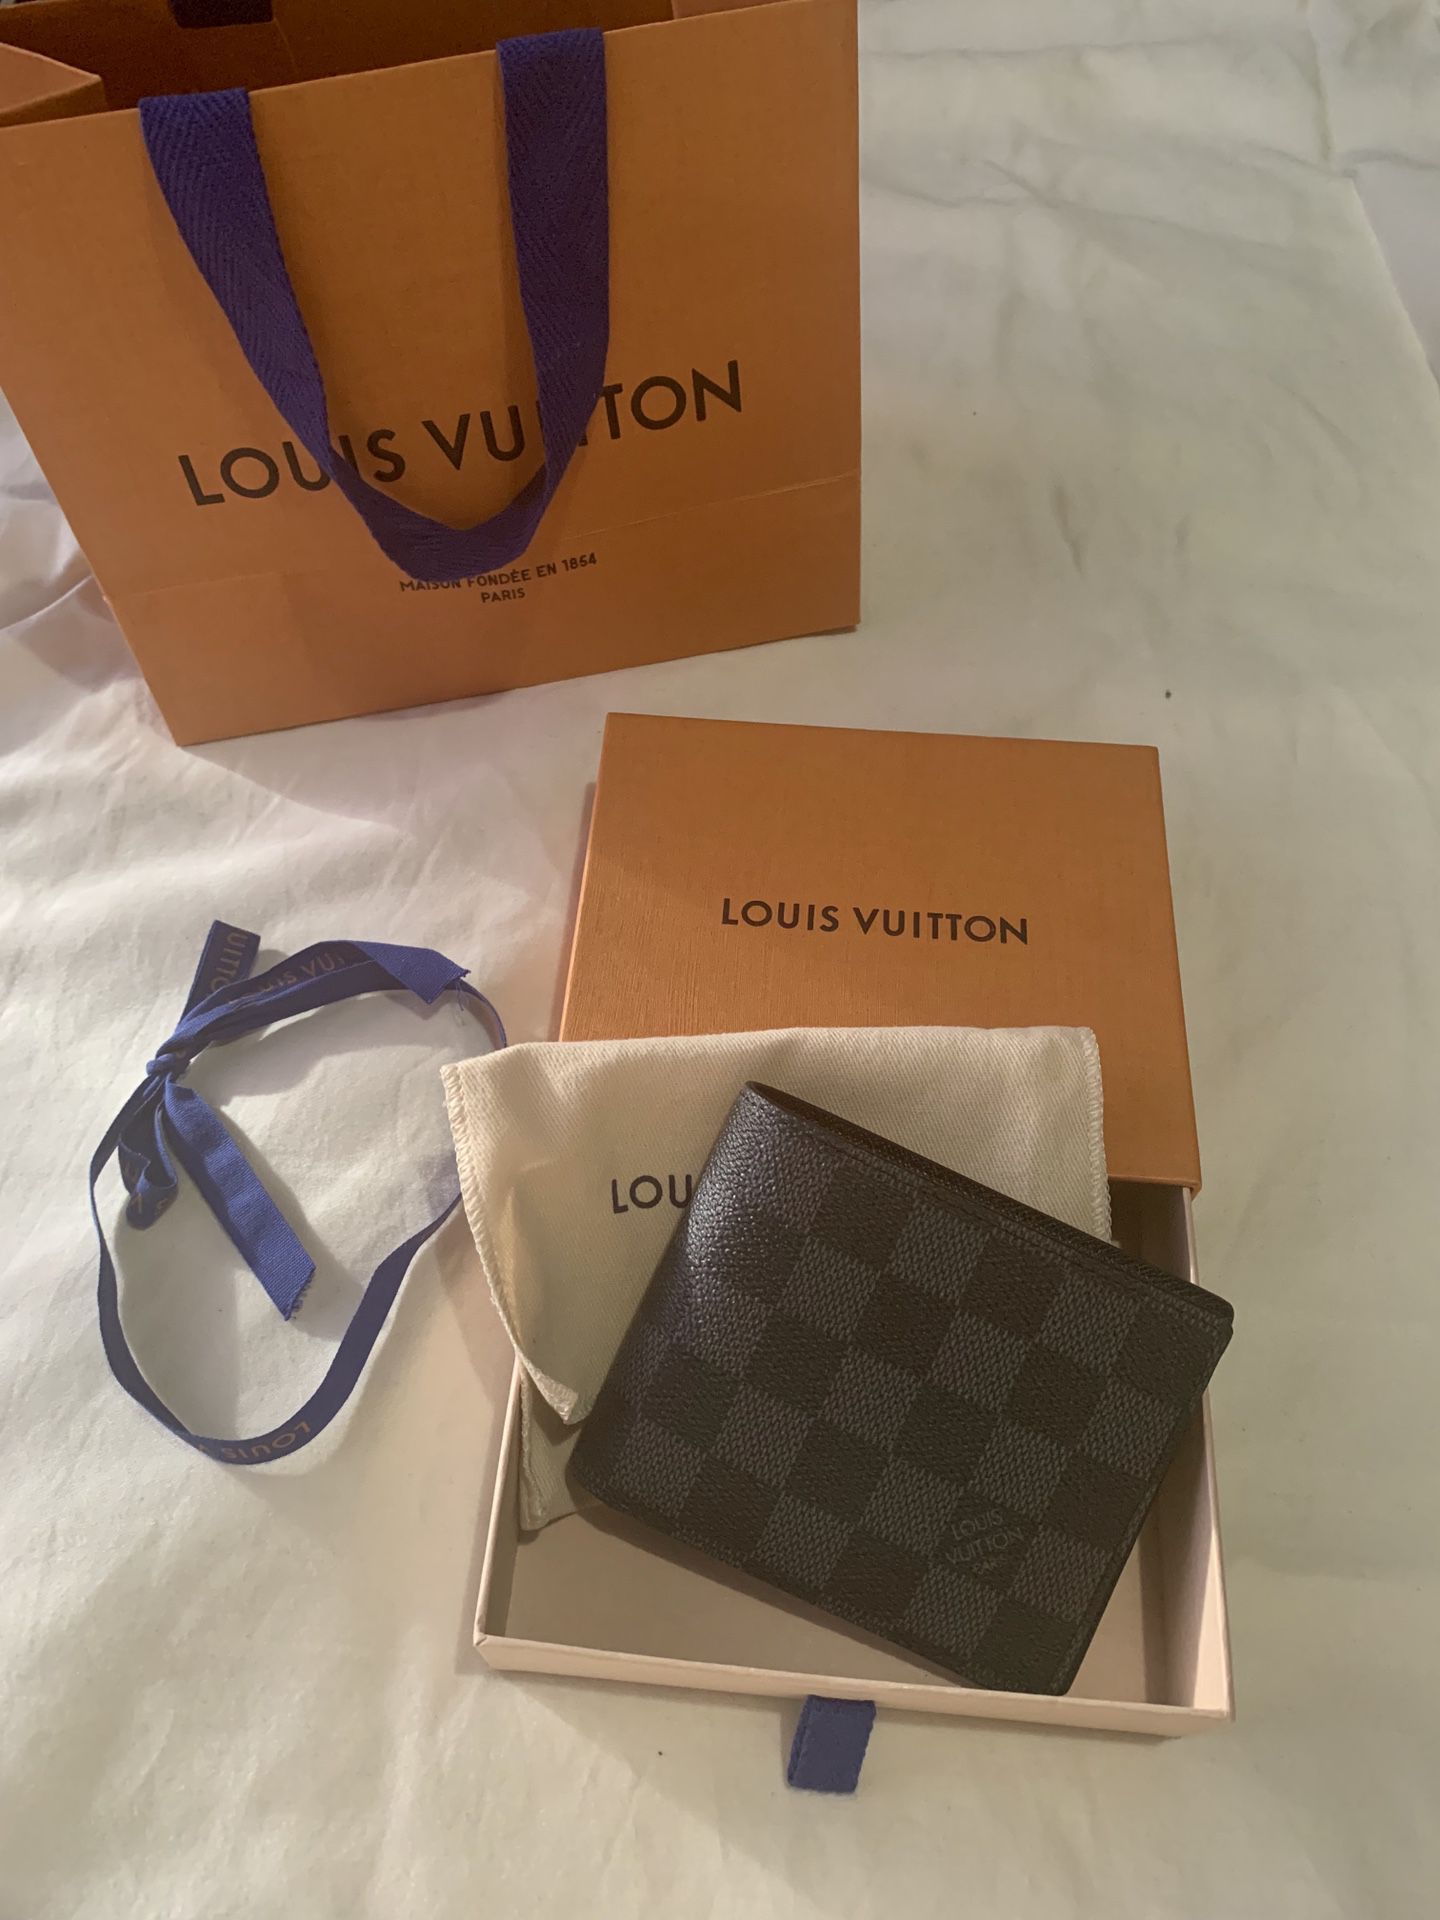 Mens Black Monogram Louis Vuitton Wallet for Sale in Phoenix, AZ